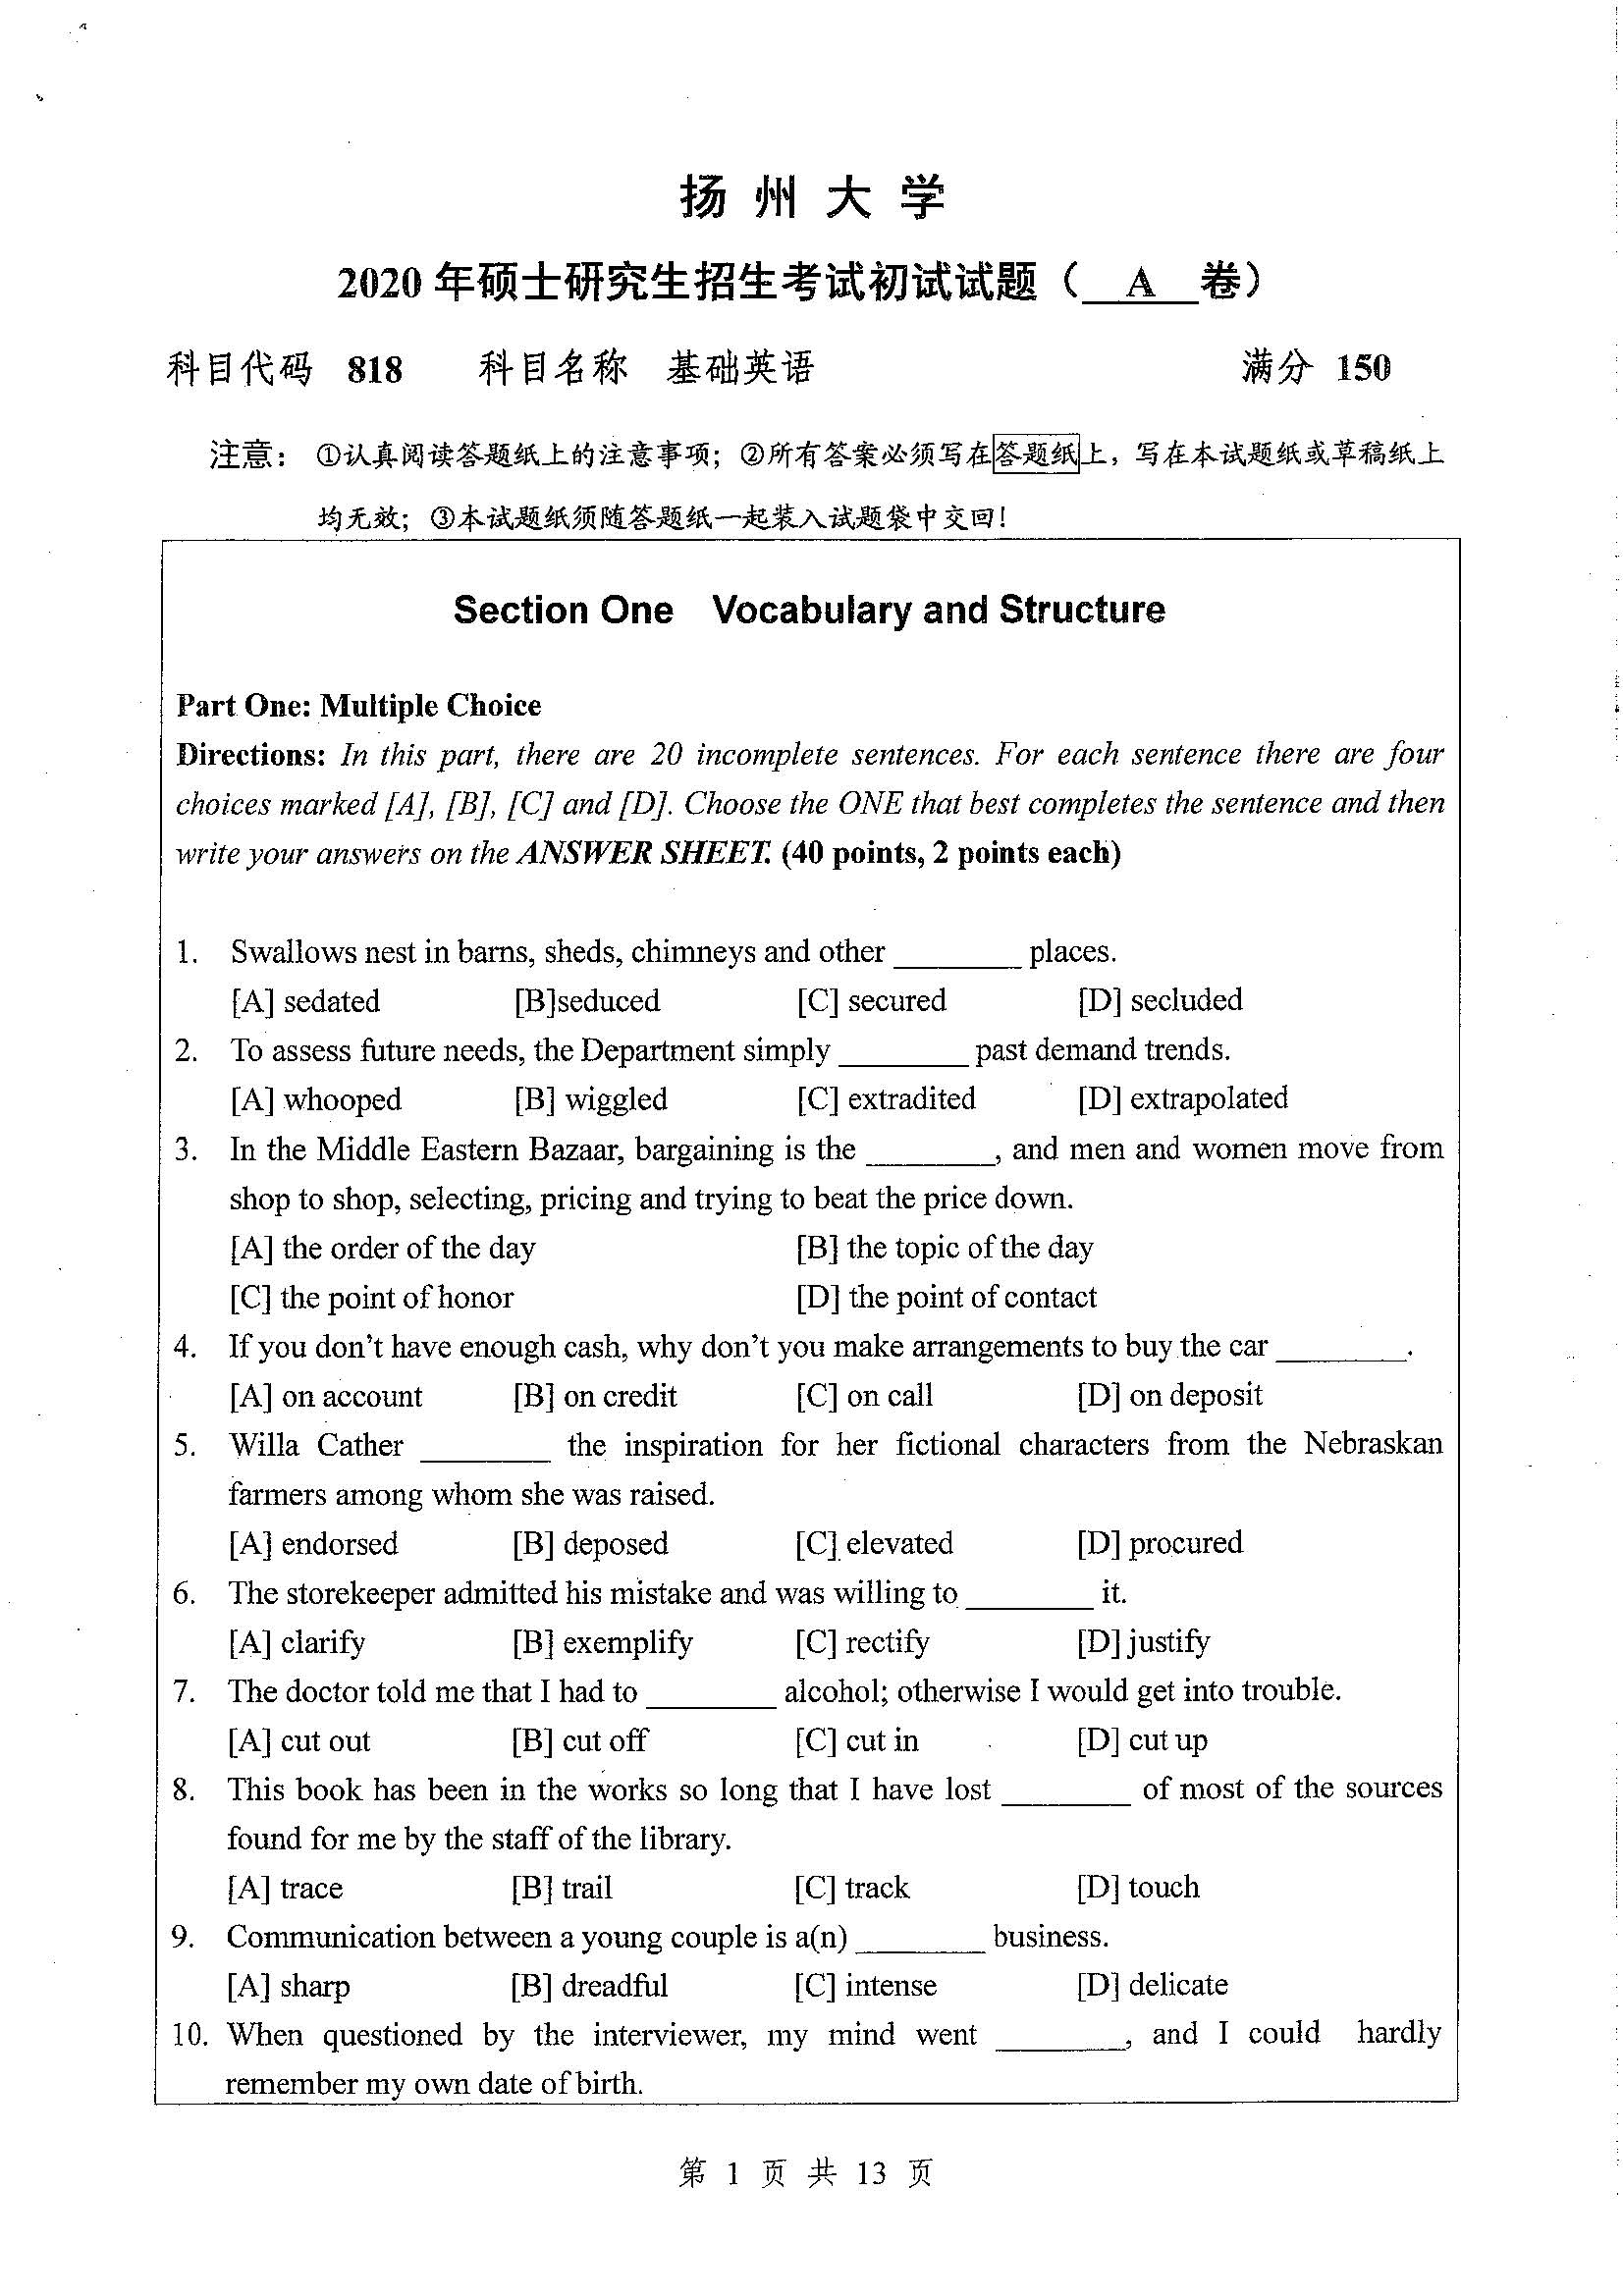 818基础英语2020年考研初试试卷真题扬州大学